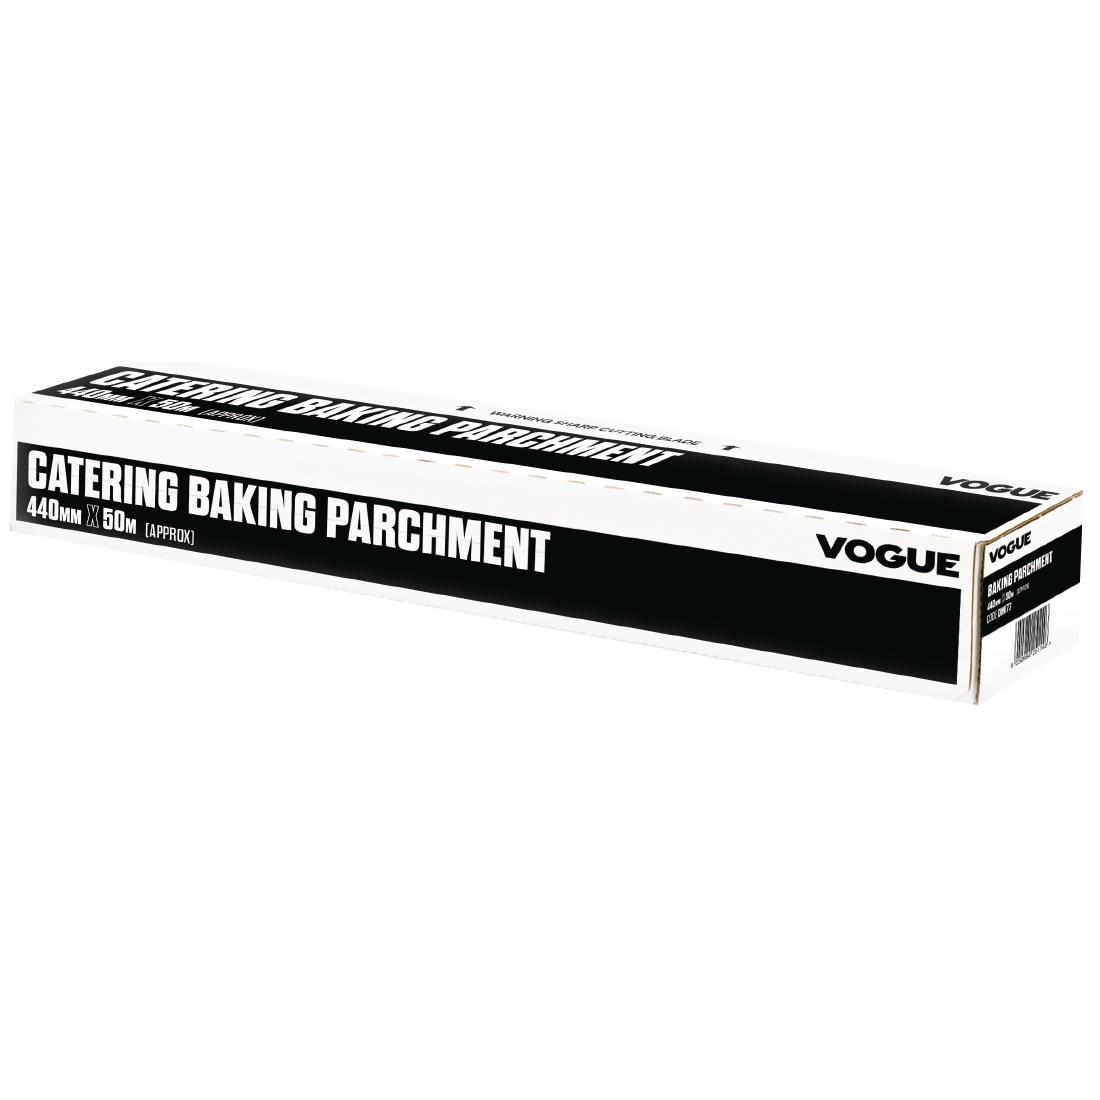 Vogue Baking Parchment Paper 440mm x 50m - DM177  - 1